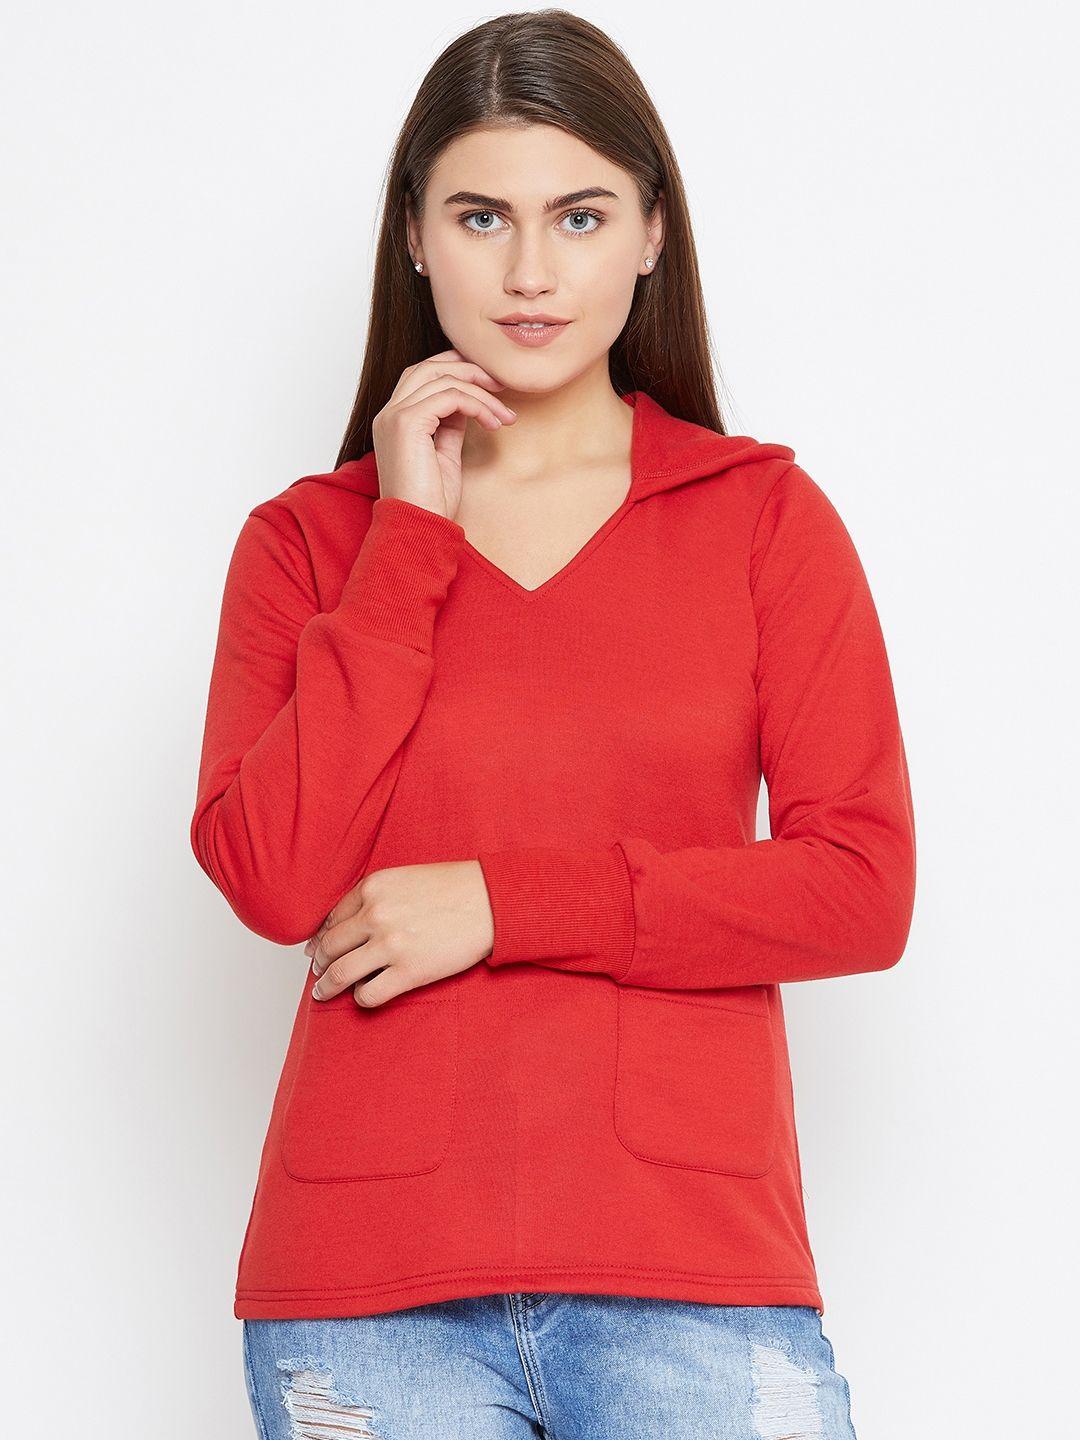 belle-fille-women-red-solid-hooded-sweatshirt